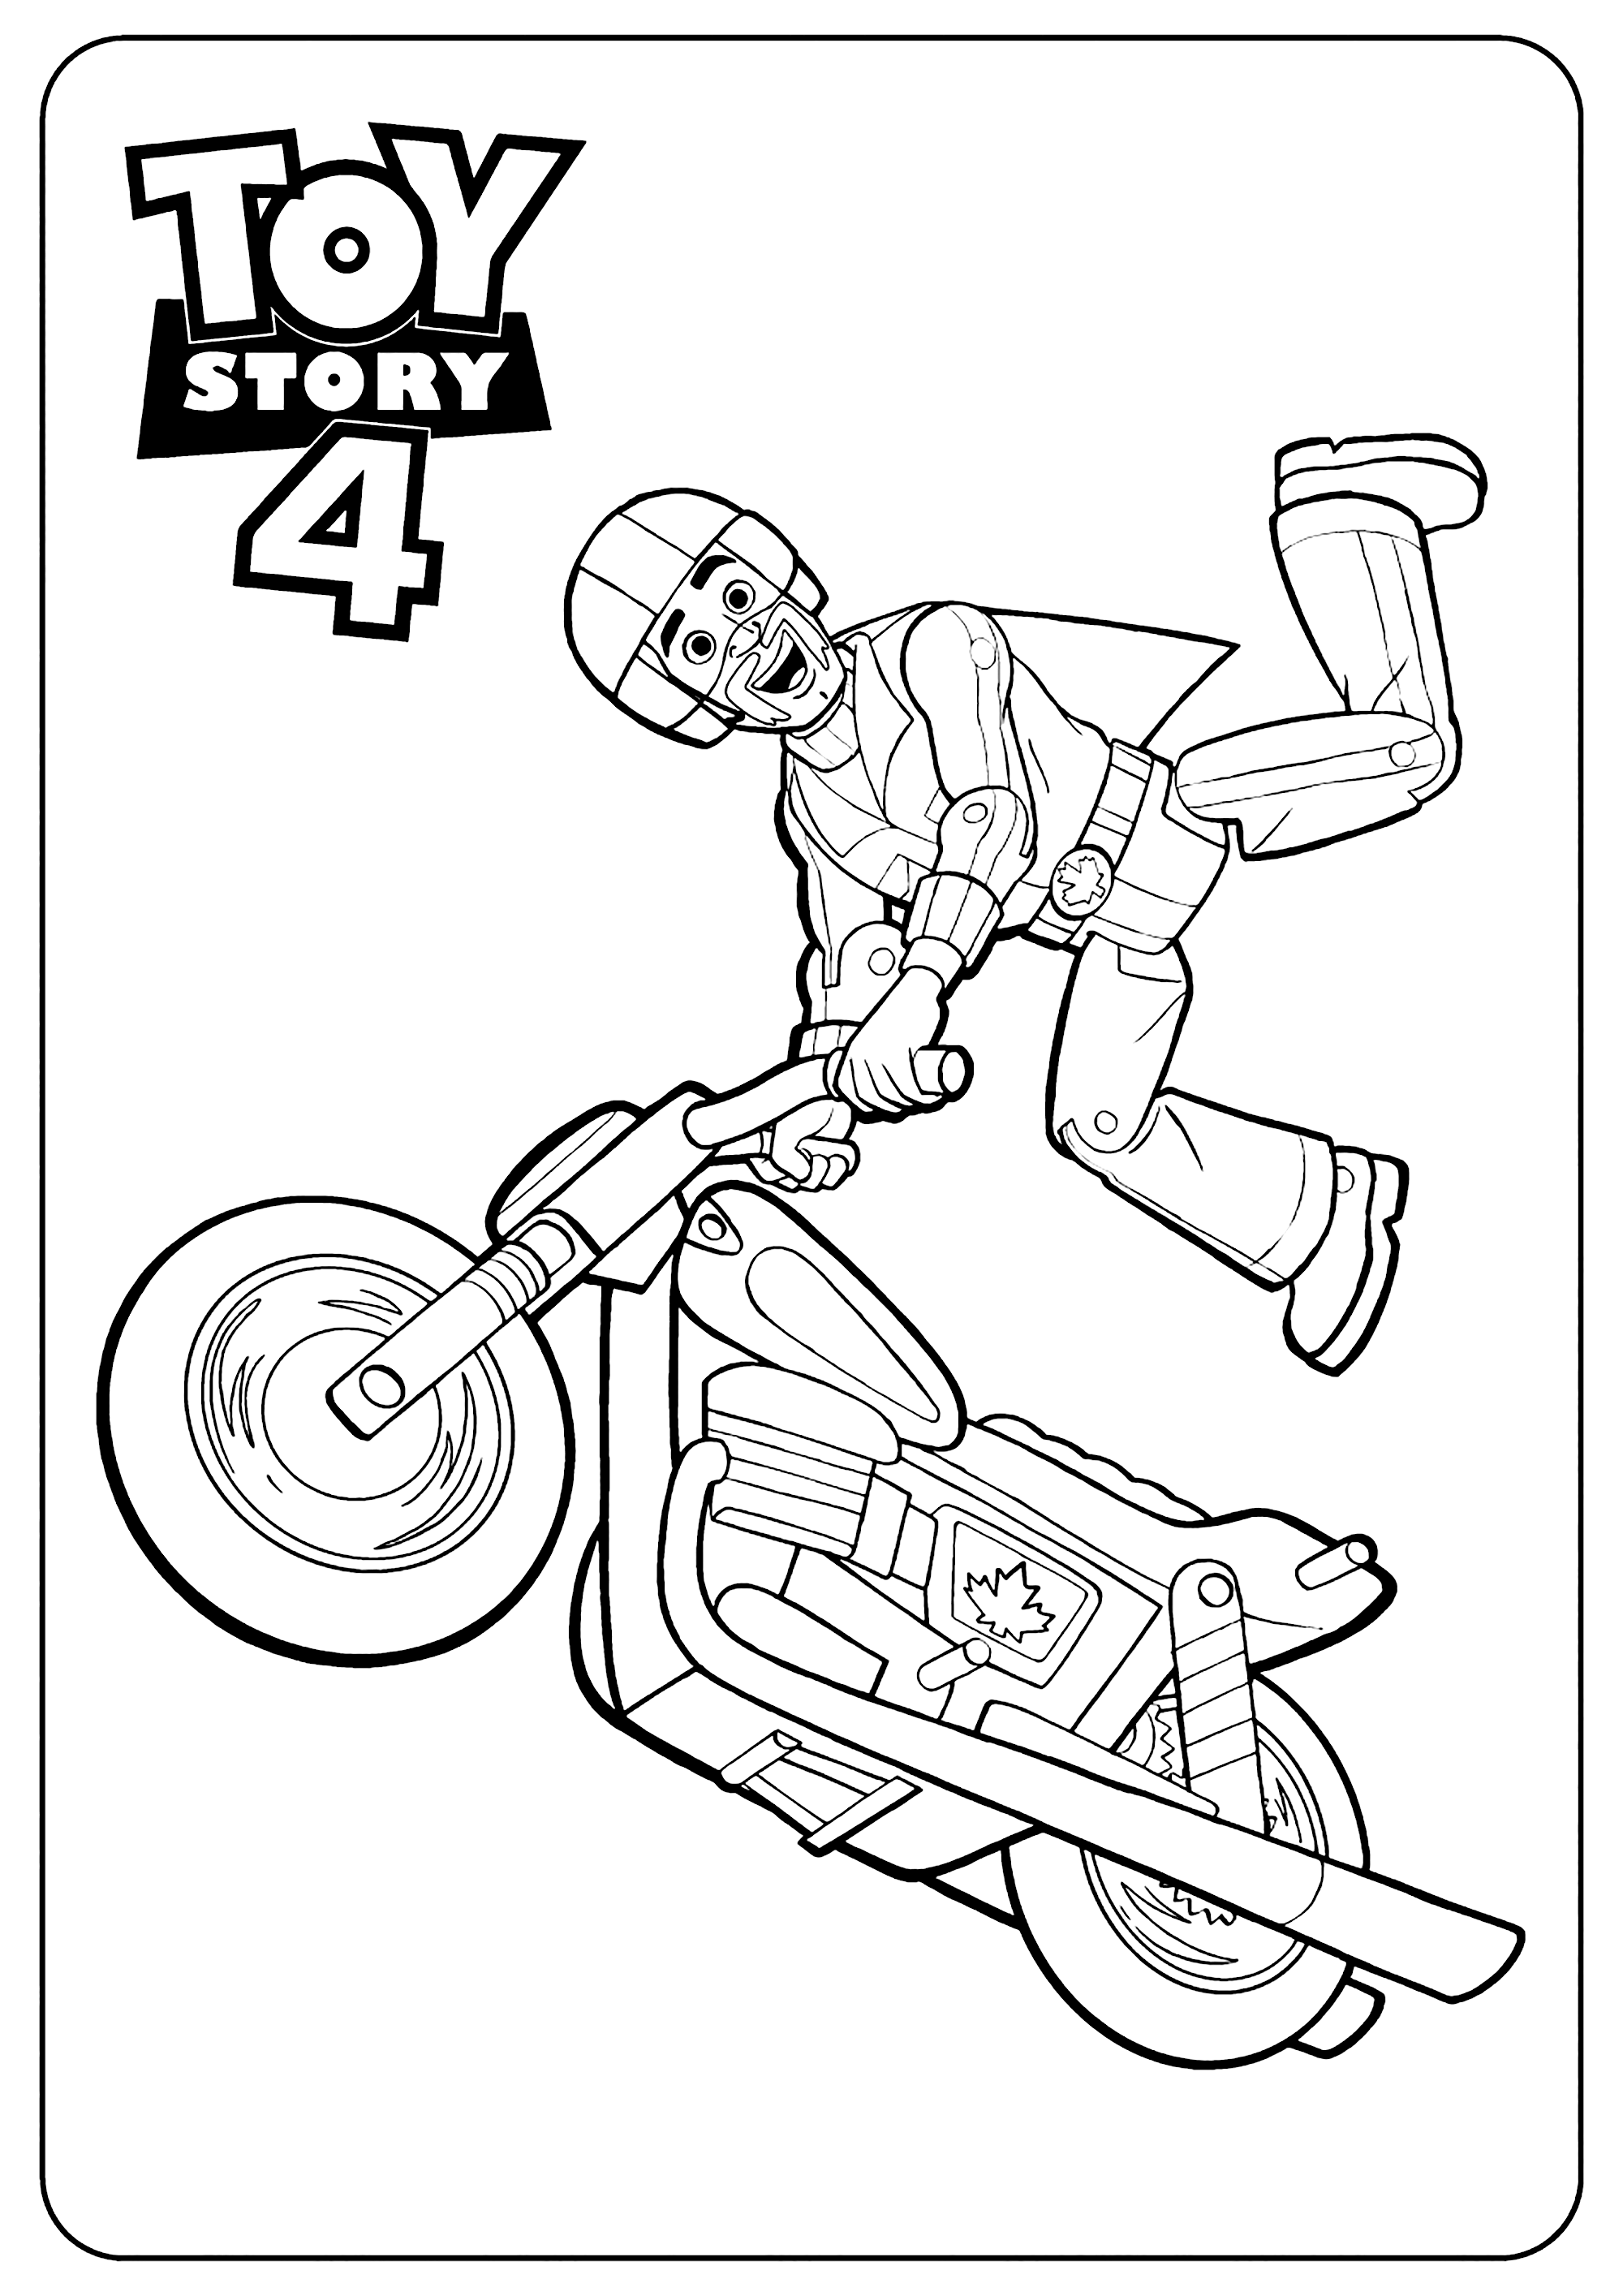 Dibujos para colorear de Toy Story 4 para niños : Duque Kaboom